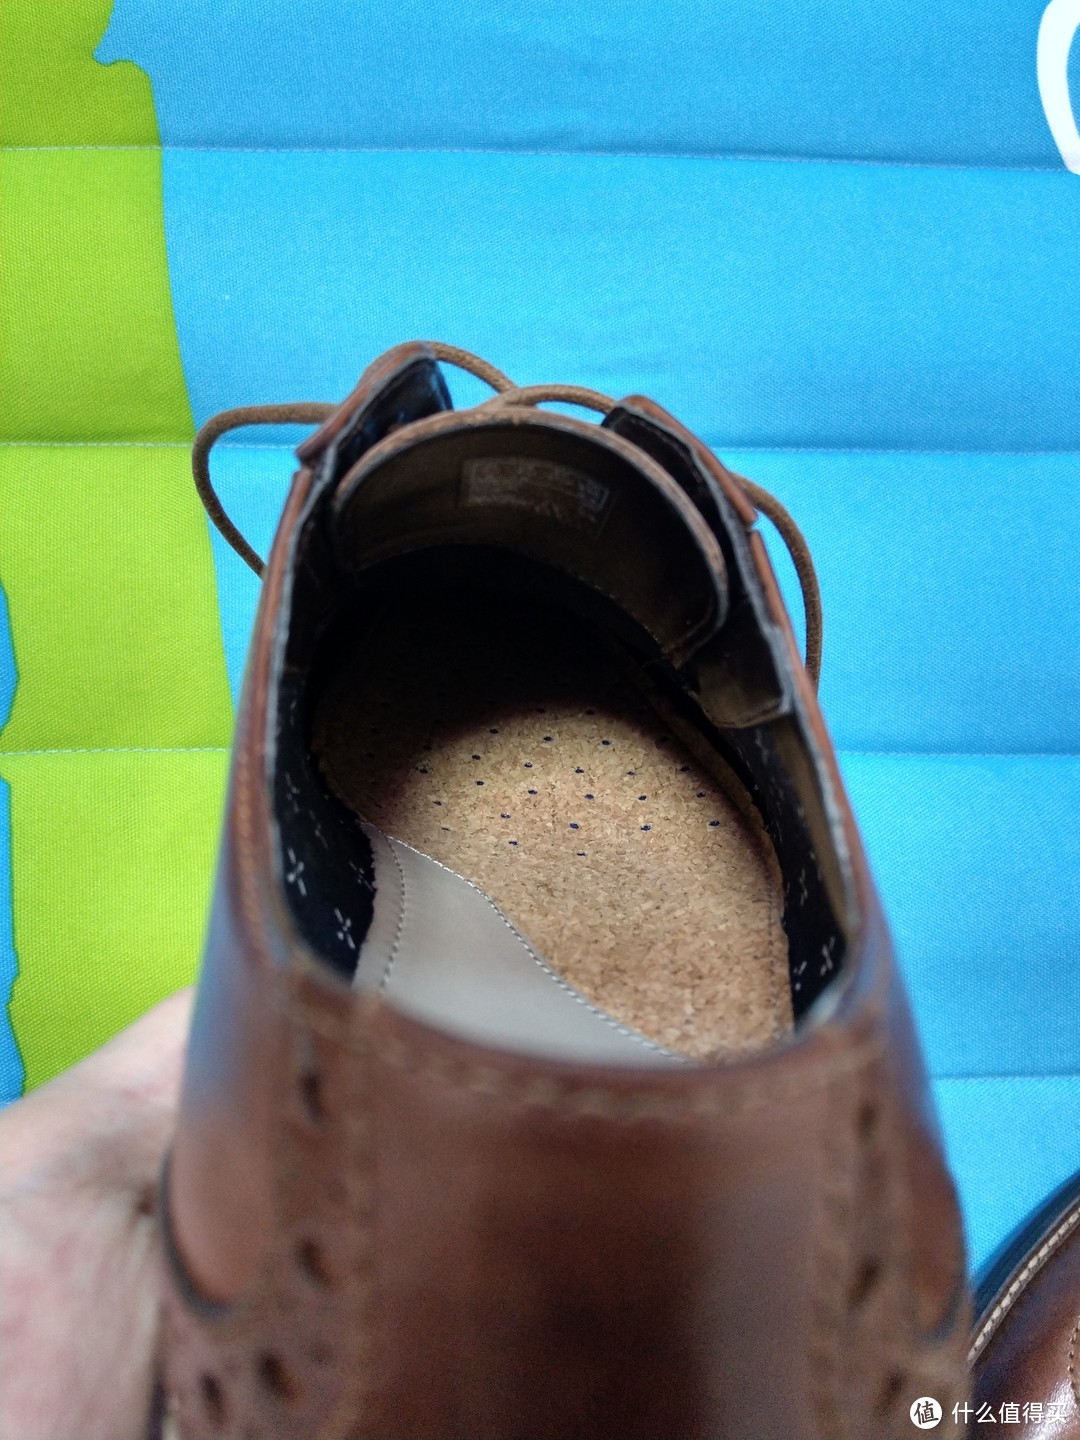 #嗨购亚马逊# 亚马逊海淘Clarks皮鞋，没信用卡怎么办？用礼品卡呗~